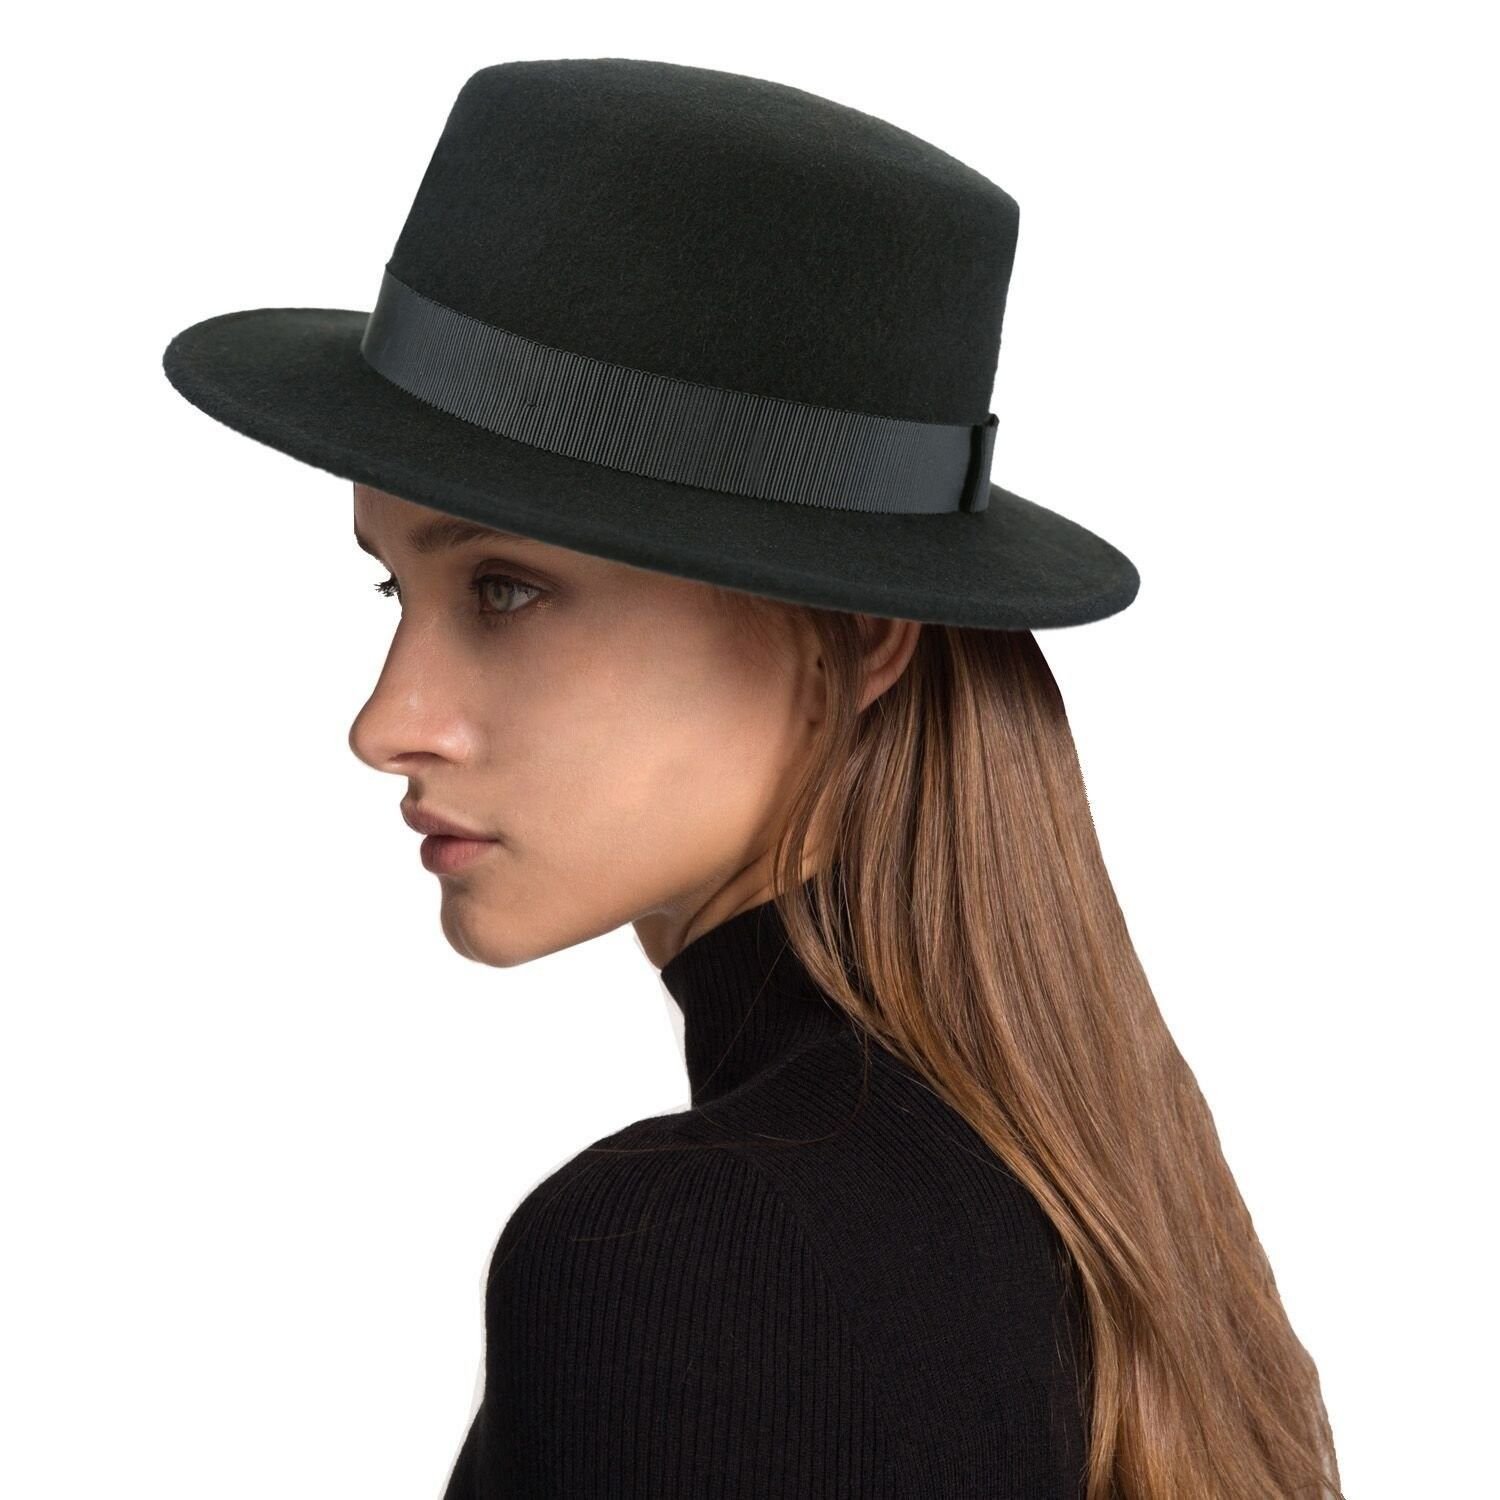 Партия шляп. Шляпа Федора трилби черная. Шляпа Хомбург женская. Фетровая шляпа Федора Бове. Шляпа порк Пай женская.